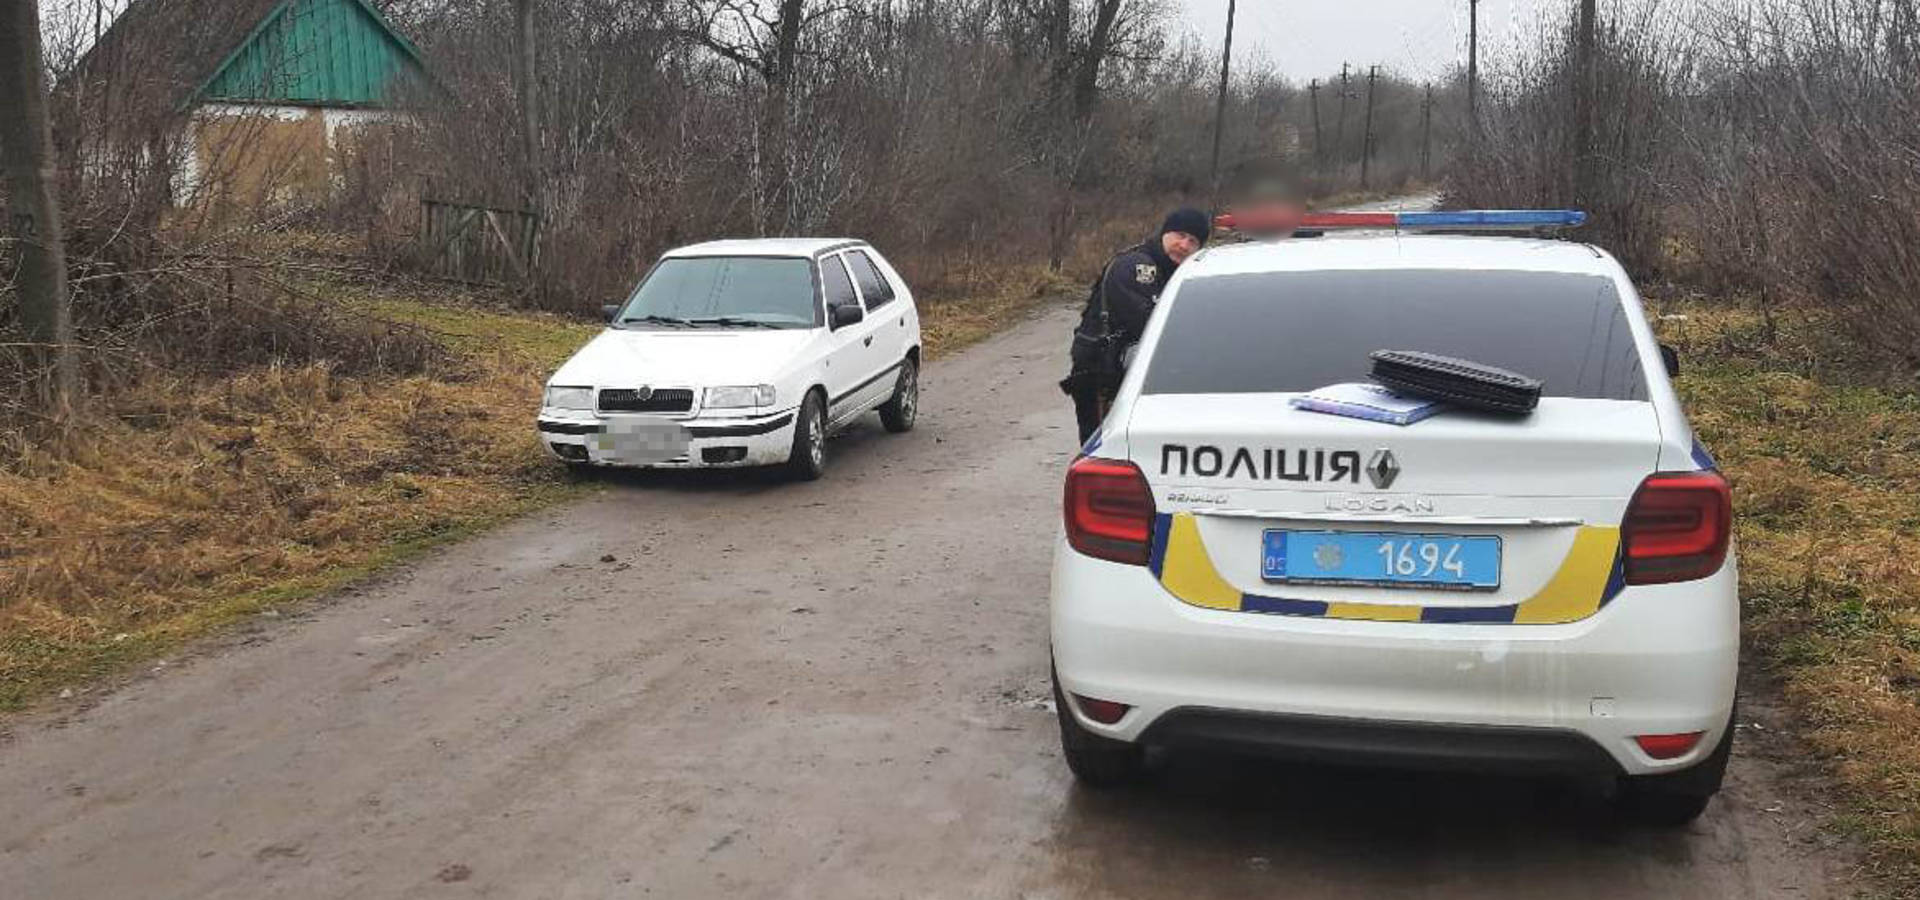 У Хмільницькому районі пʼяний водій пропонував поліцейським хабар